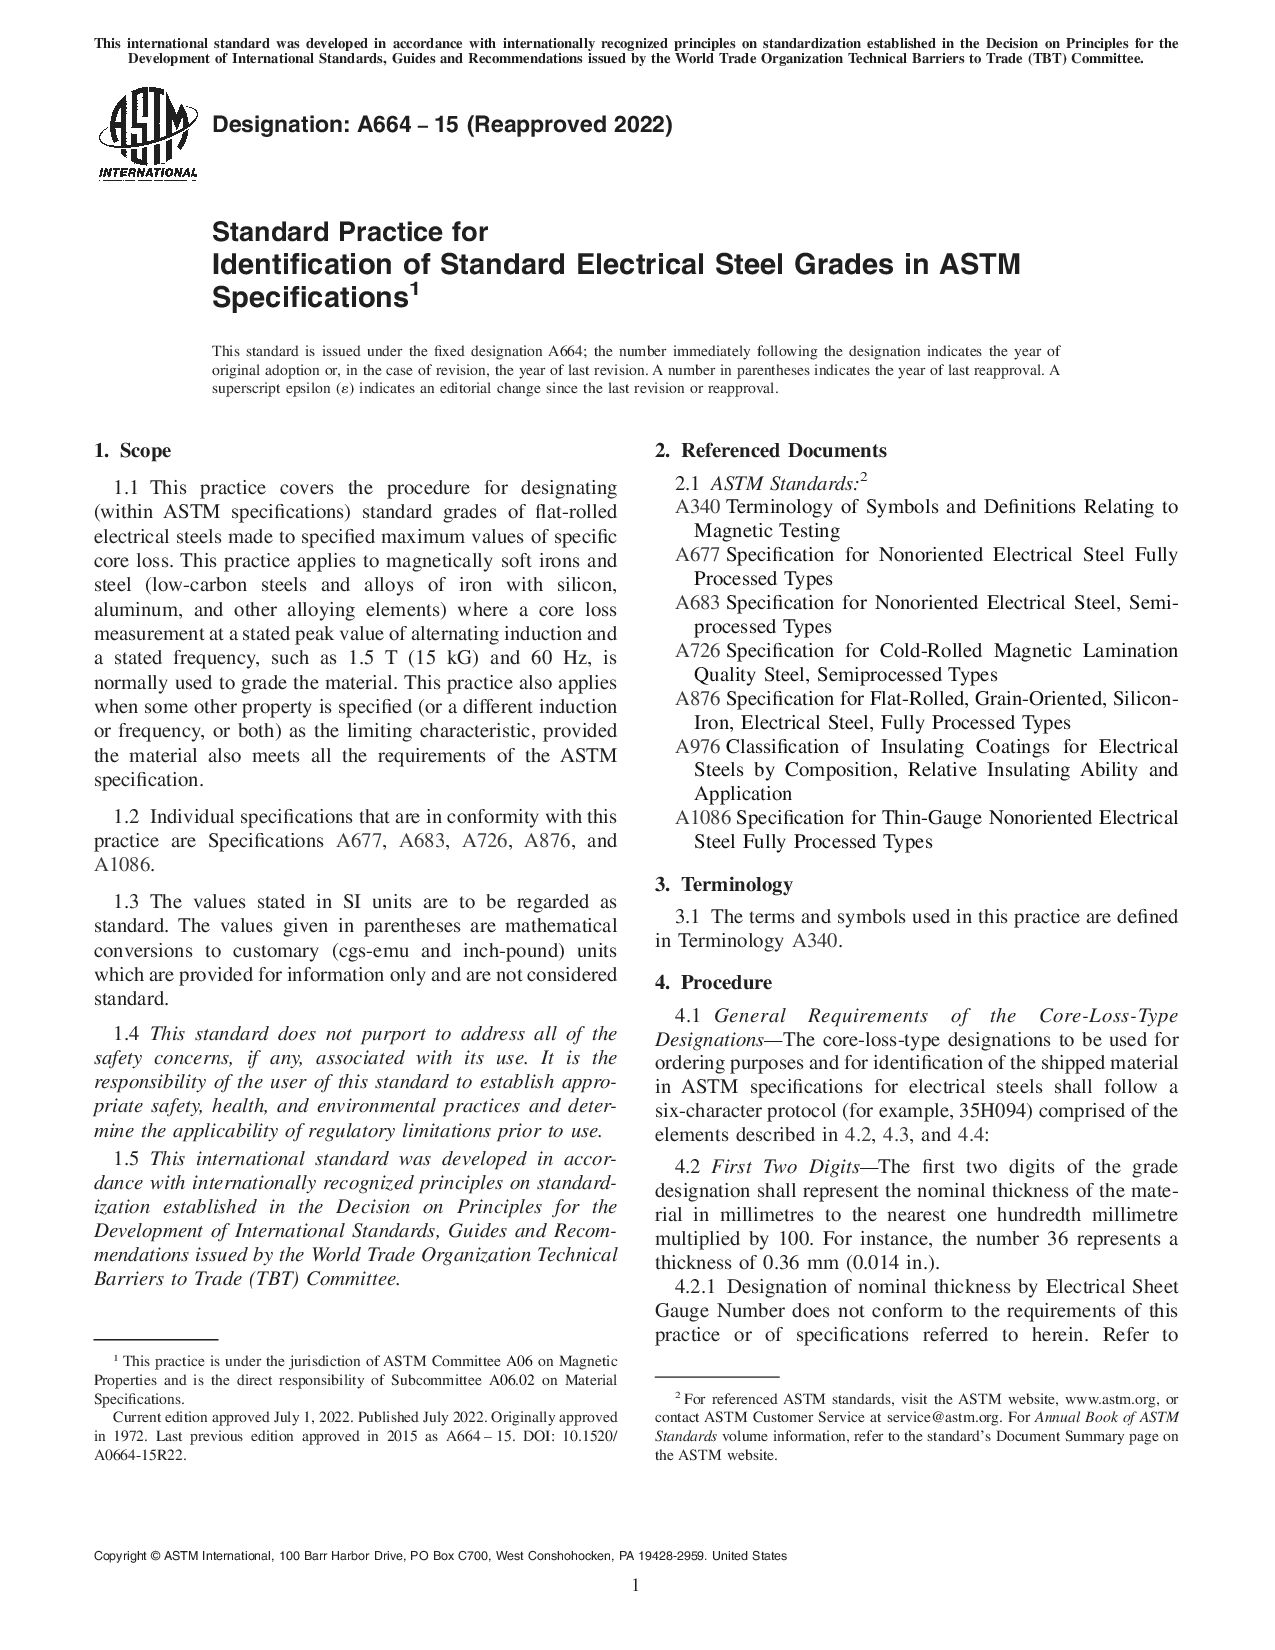 ASTM A664-15(2022)封面图